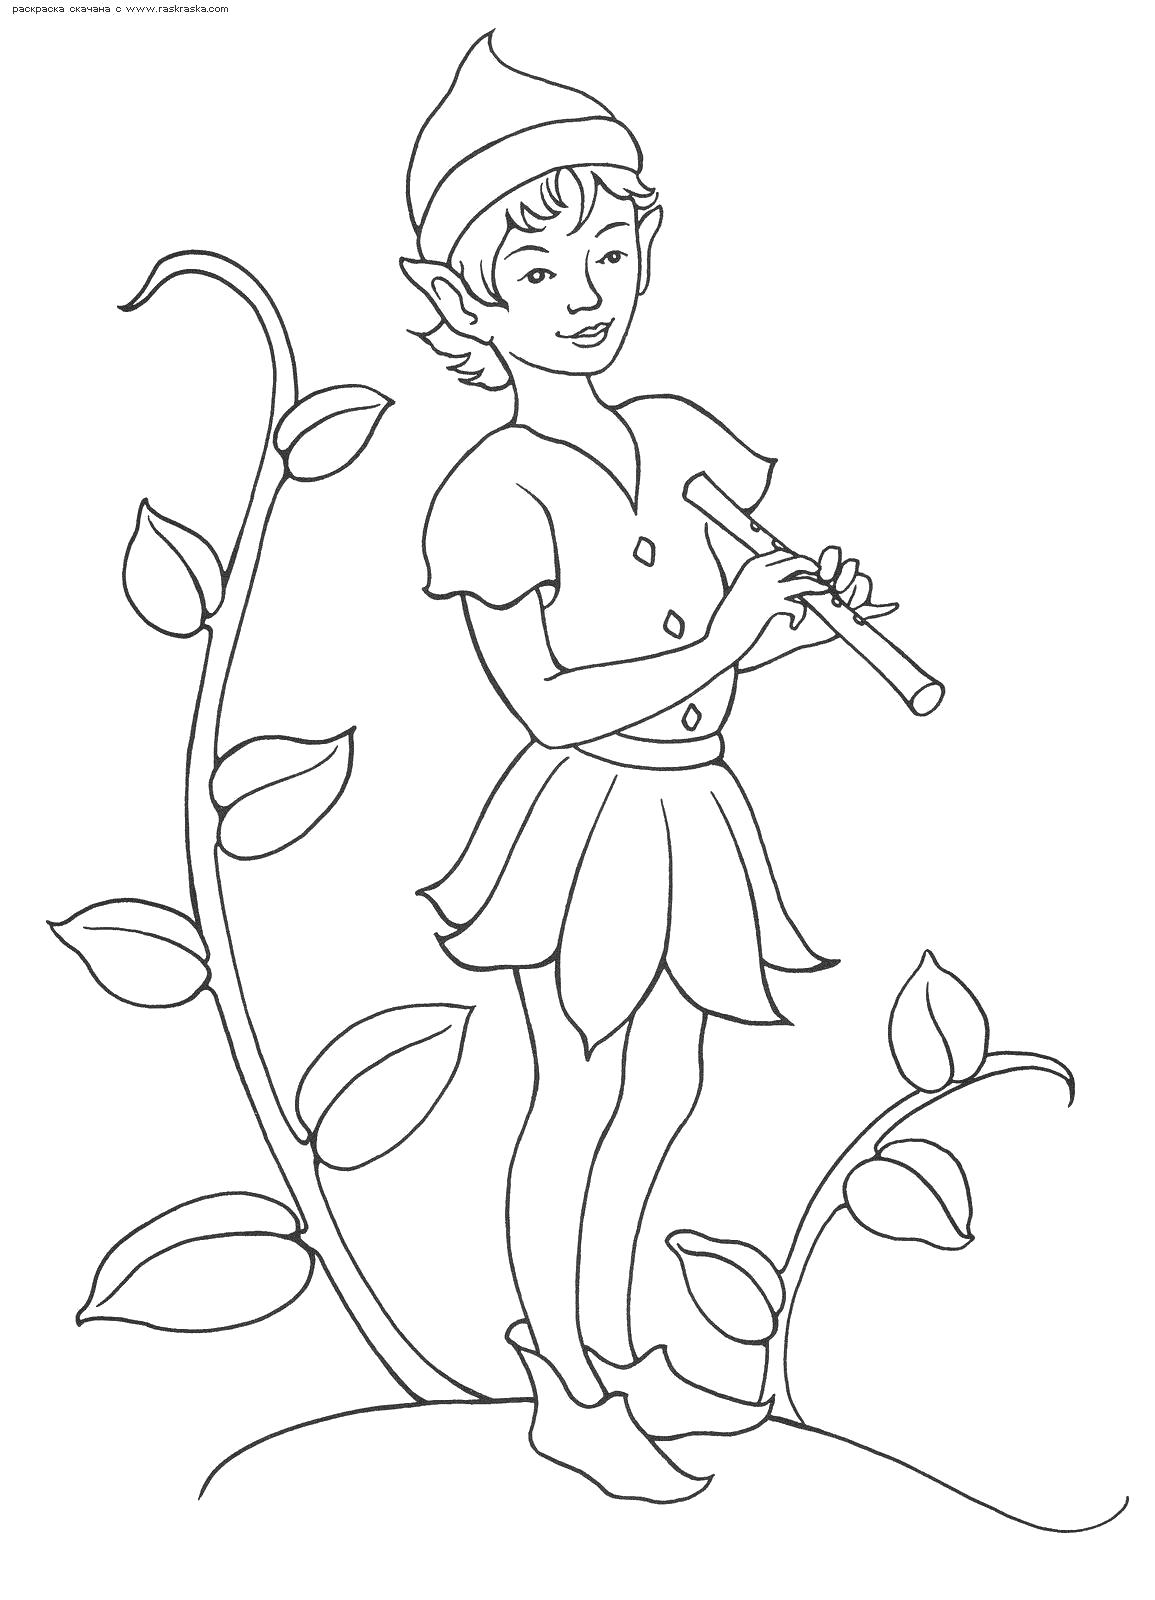 Раскраска Раскраска Мальчик-эльф с дудочкой в руках. Раскраска Эльфы раскраски онлайн для детей. Эльф